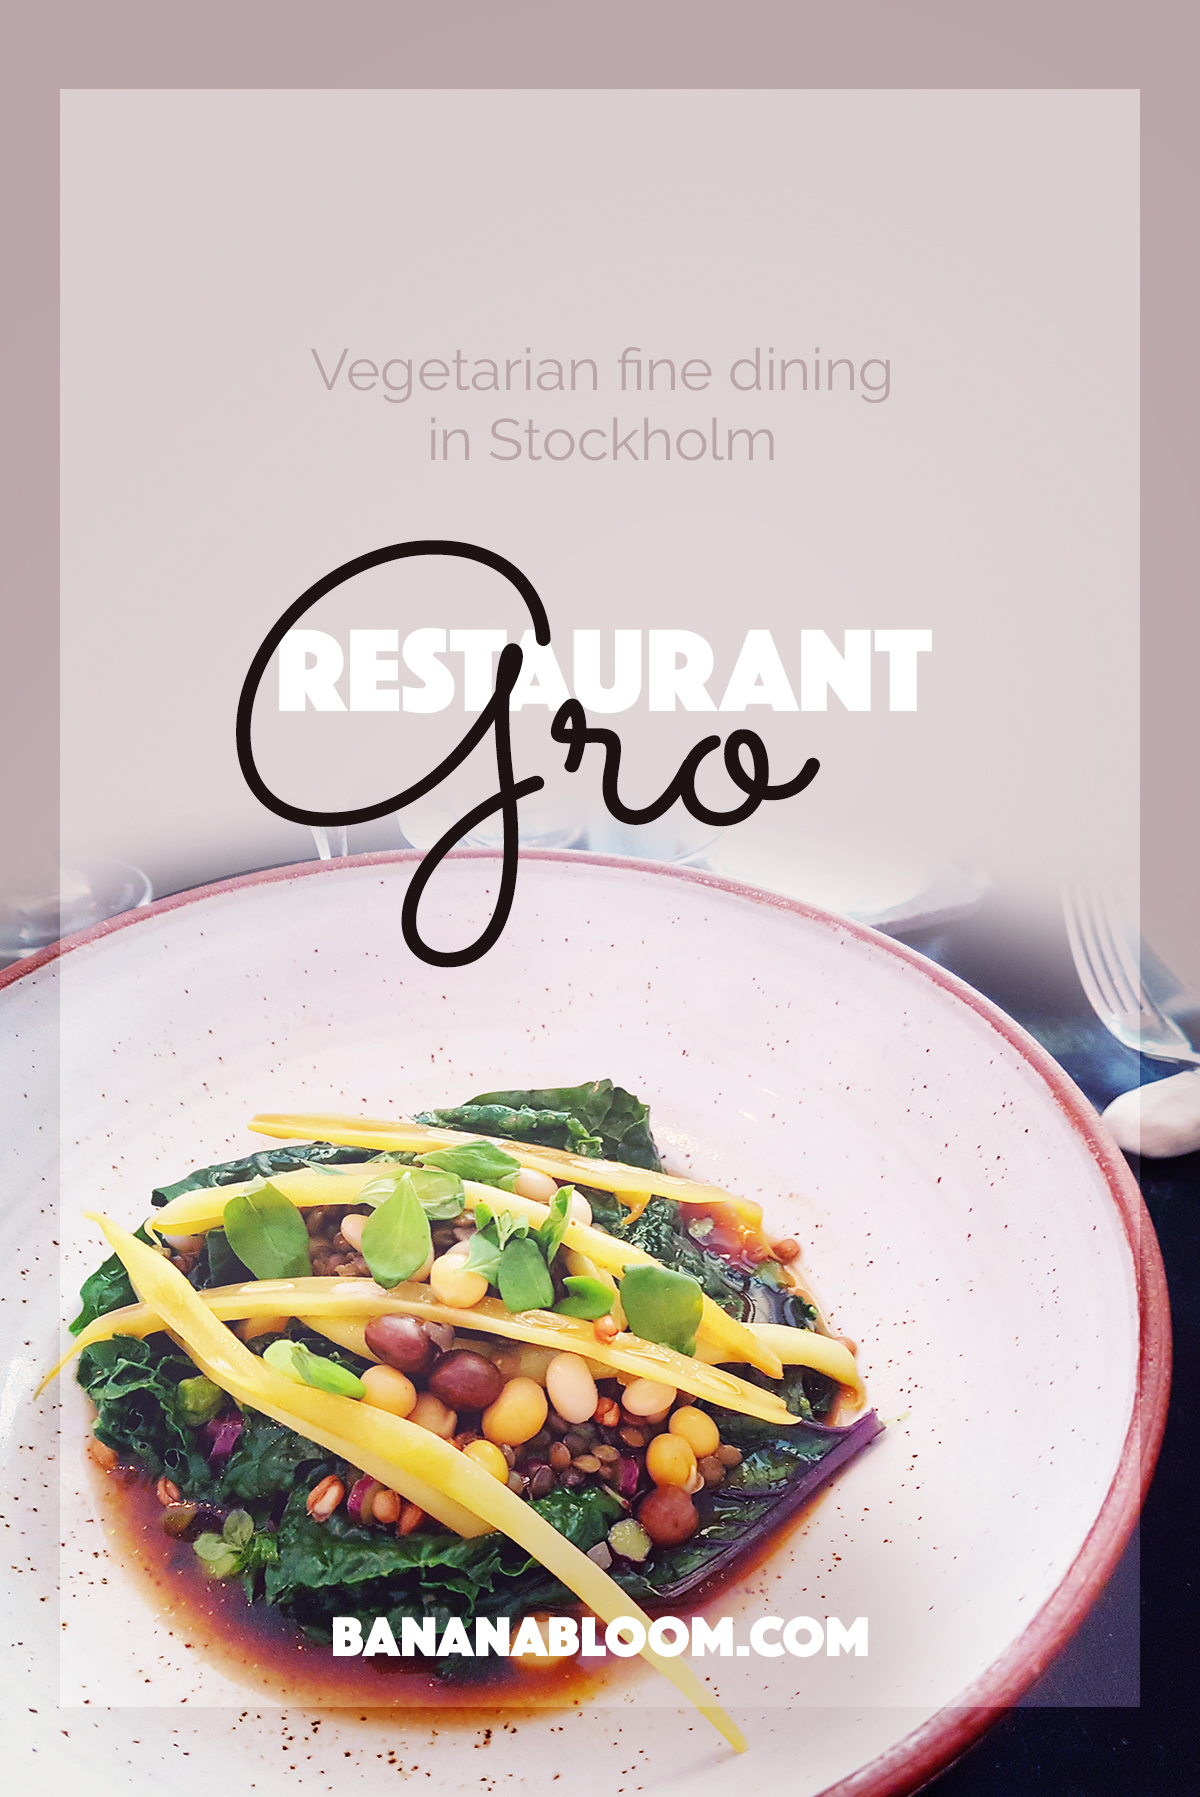 Restaurant Gro | http://BananaBloom.com #stockholm #vegetarian #restaurant